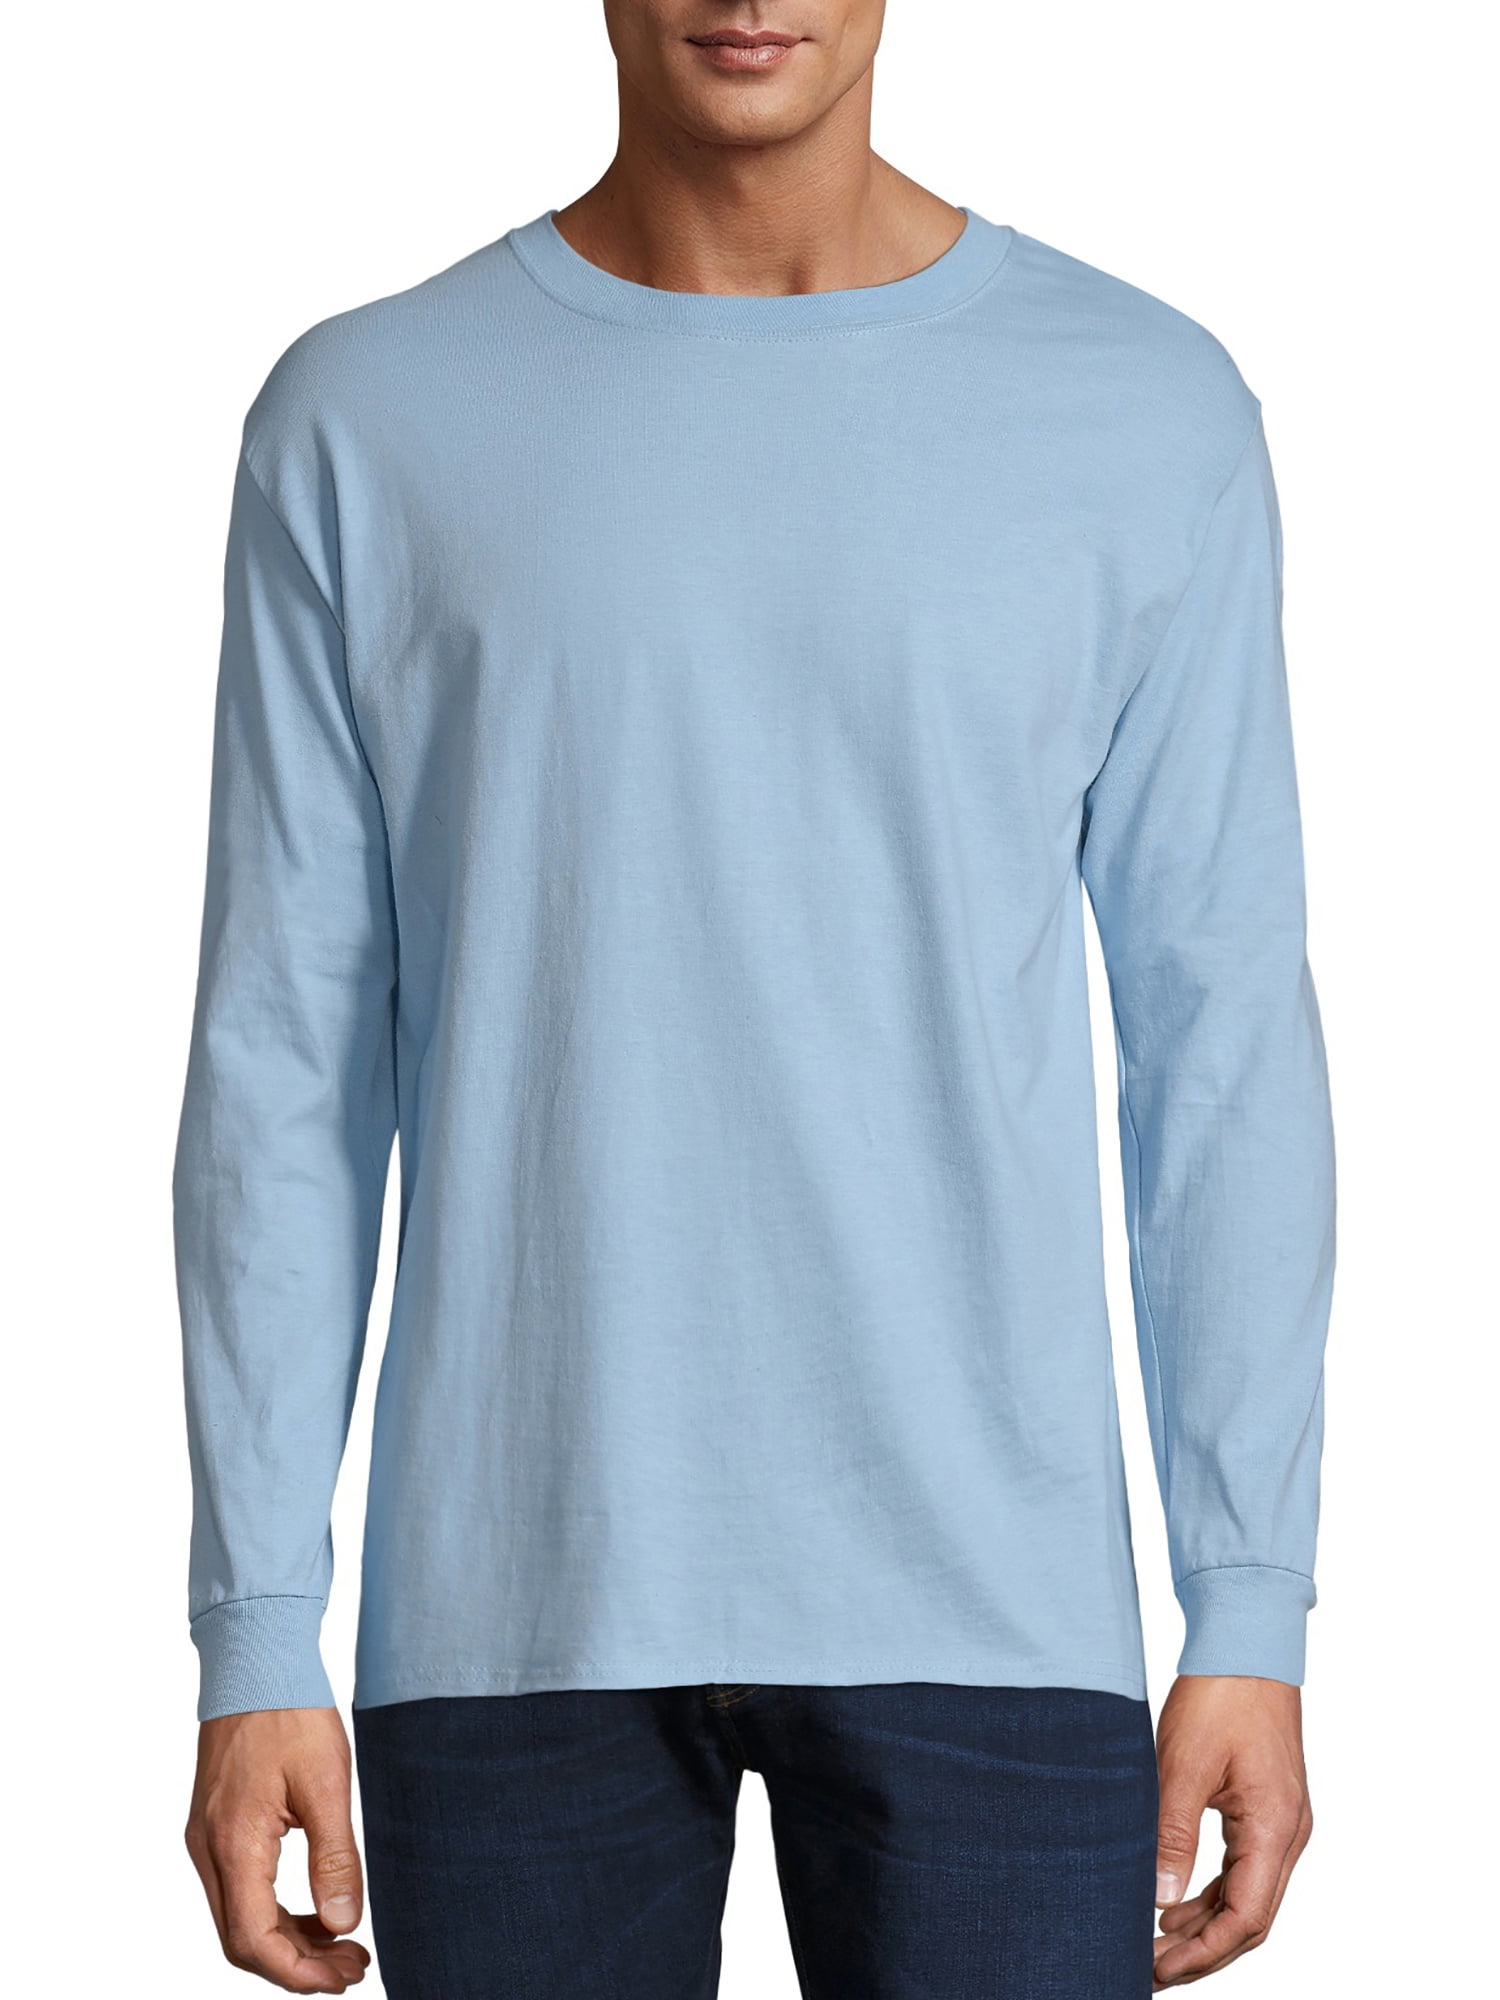 Hanes Long-Sleeve T-Shirt 4-Pack Tee ComfortSoft Men's 100% Cotton  Heavyweight